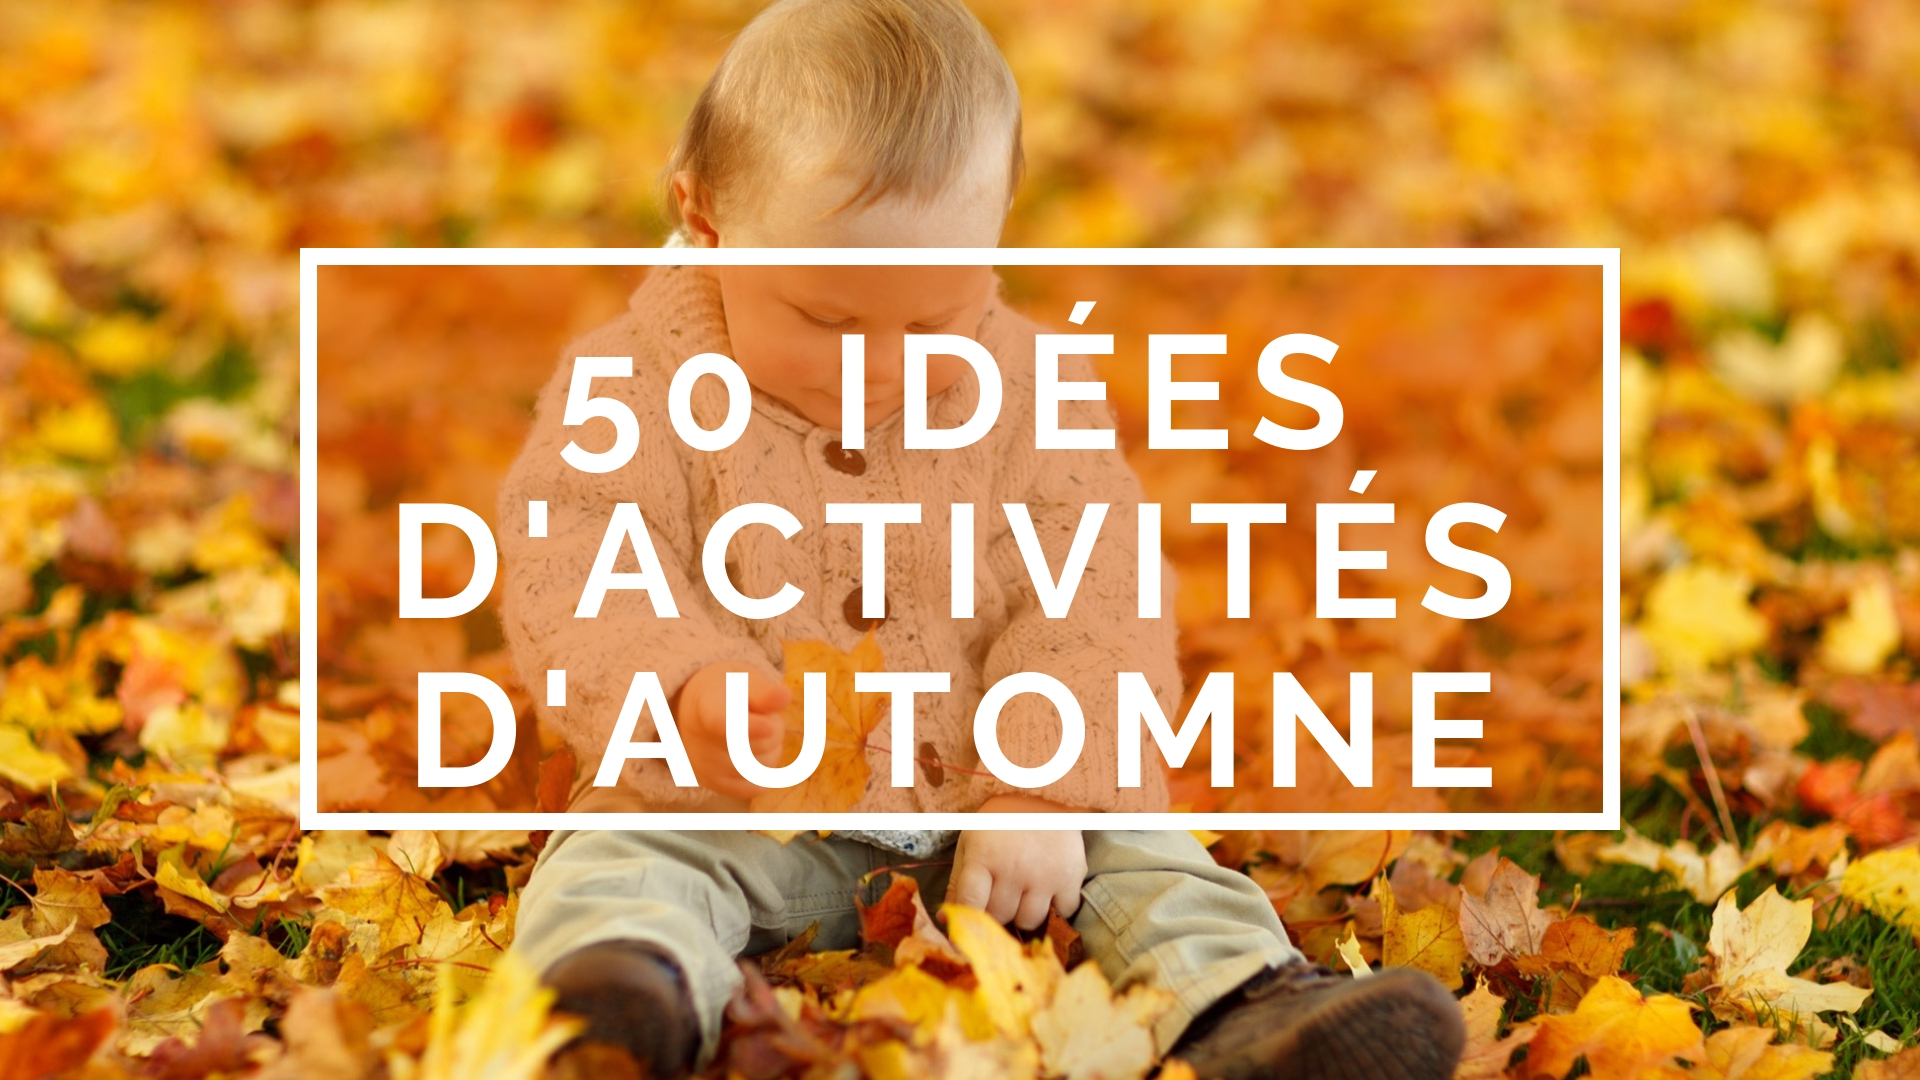 36 activités d'automne pour les enfants 